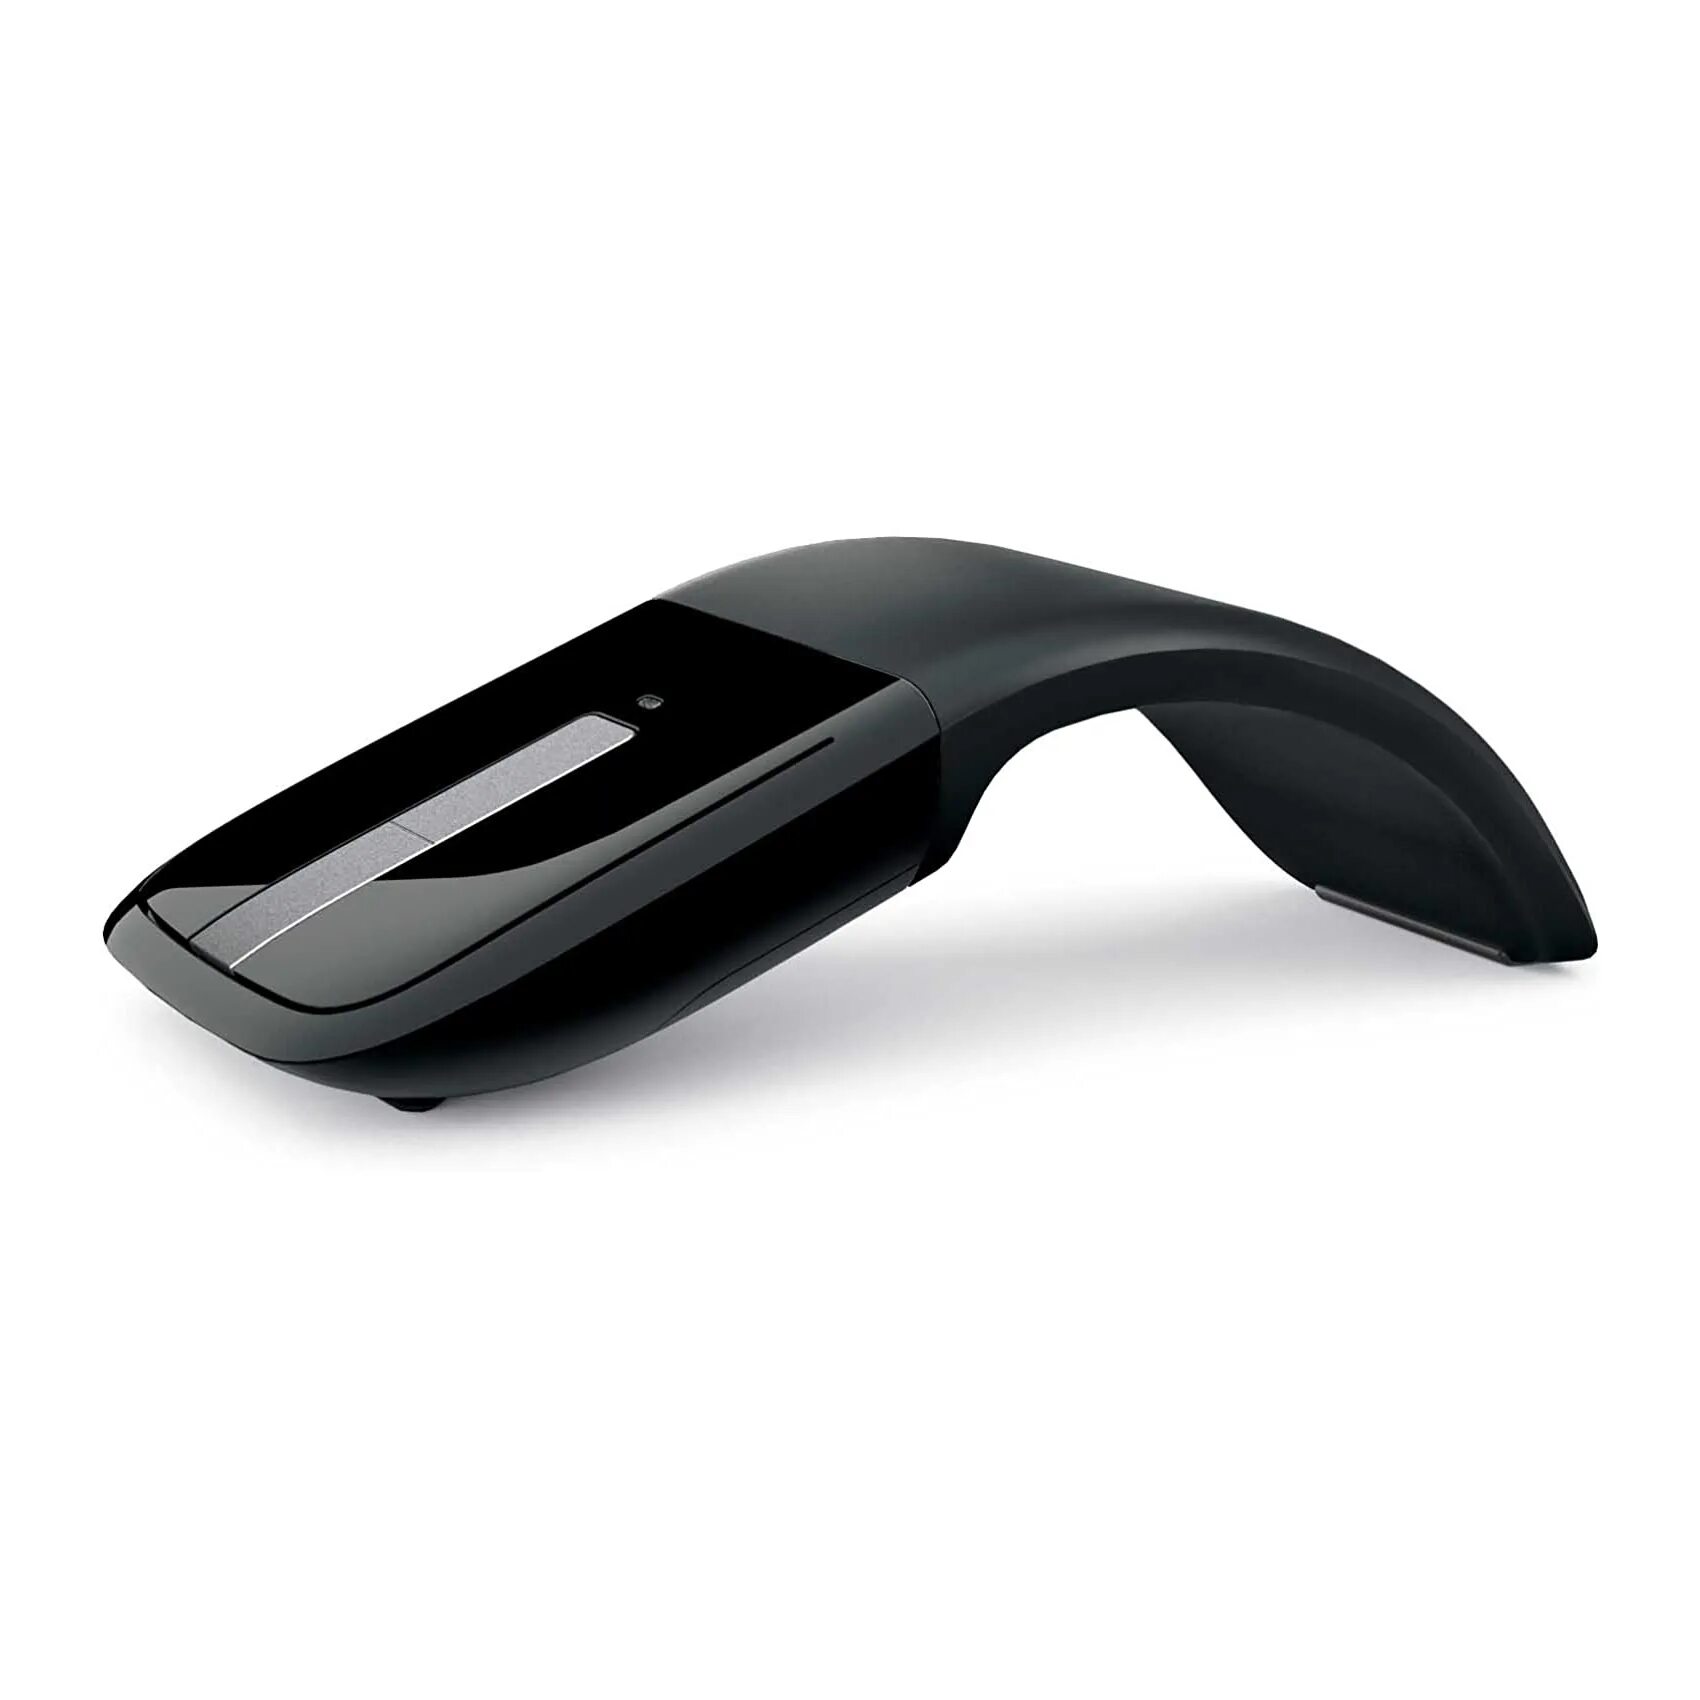 Мышь arc. Мышь беспроводная Microsoft Arc Touch Black (RVF-00056). Microsoft Arc Mouse 1349. Мышь компьютерная Microsoft Arc Touch Mouse черная. Microsoft Arc Mouse модель 1349 мышь беспроводная.